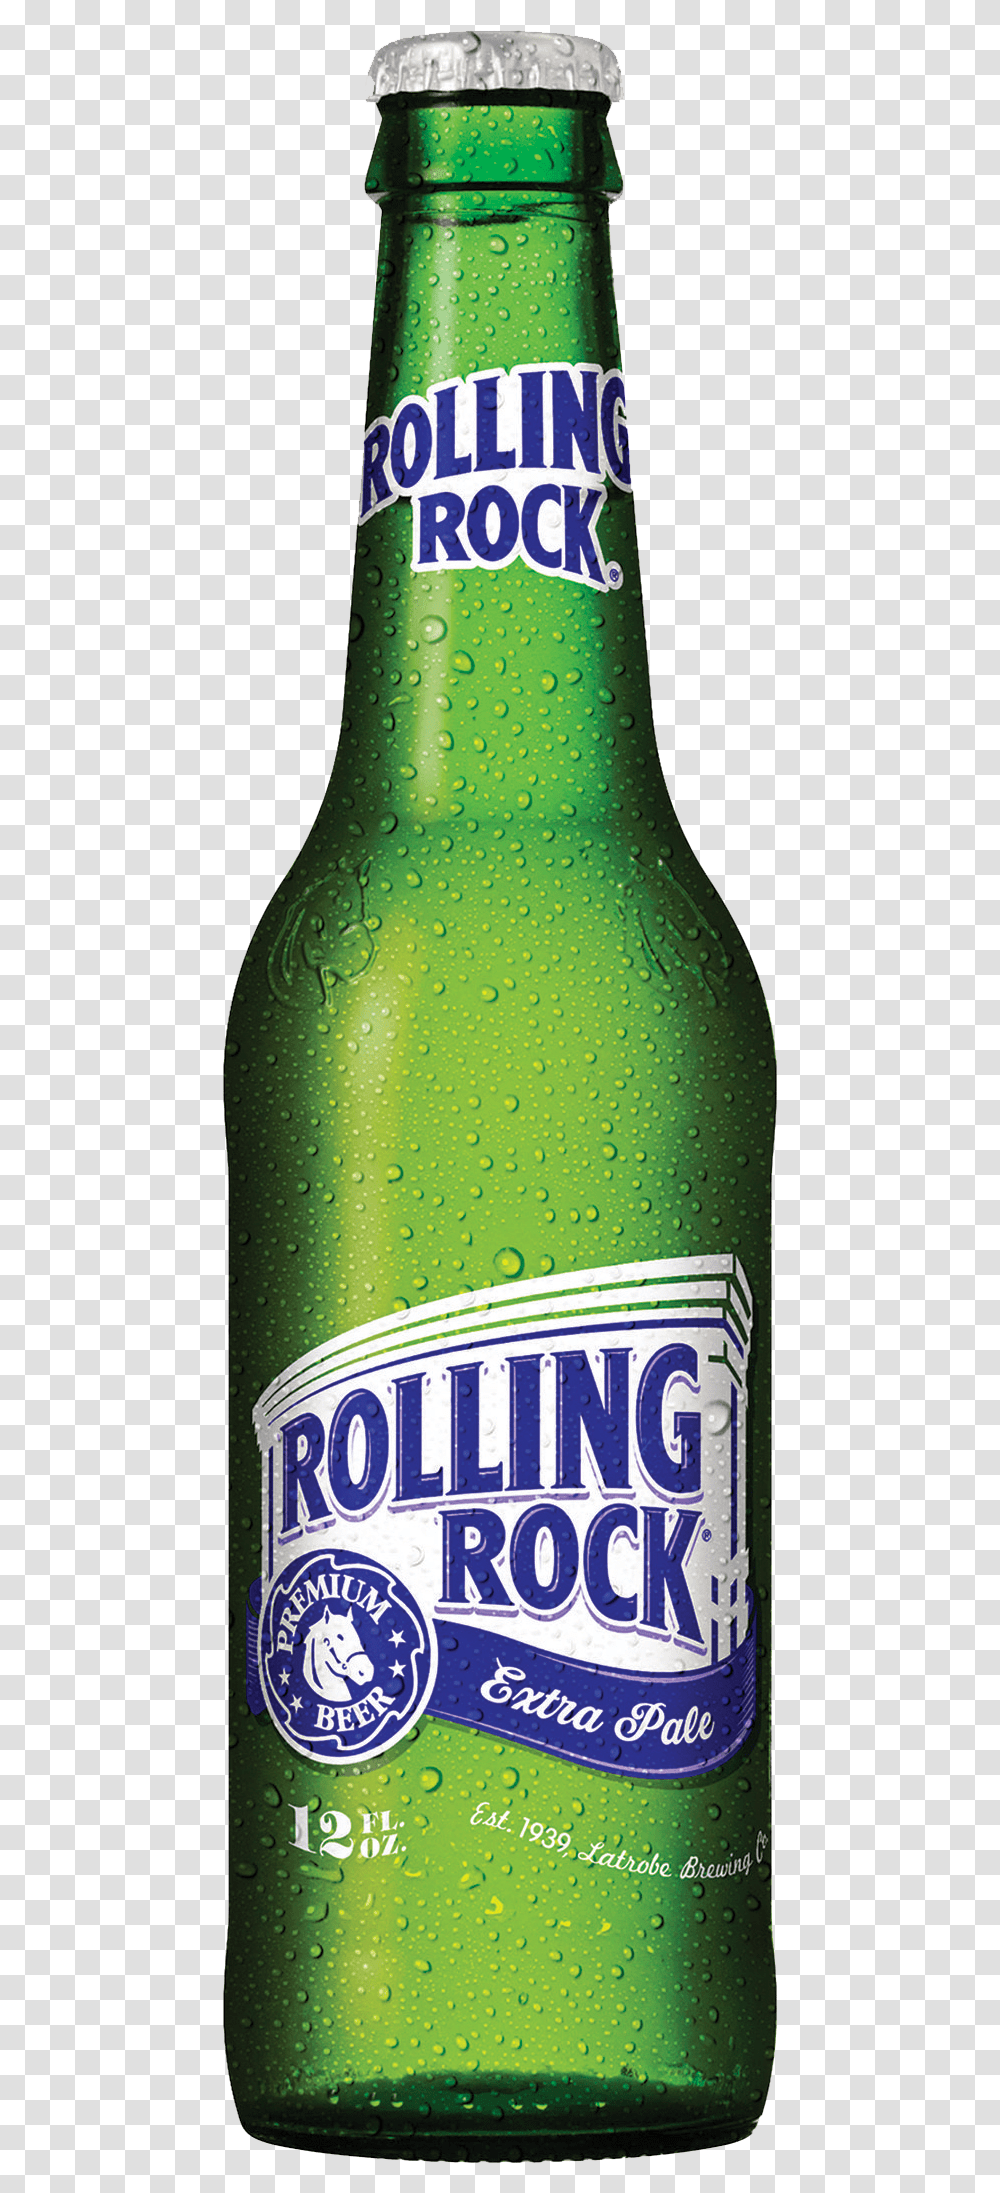 Rolling Rock Rolling Rock Beer Bottle, Beverage, Drink, Alcohol, Lager Transparent Png